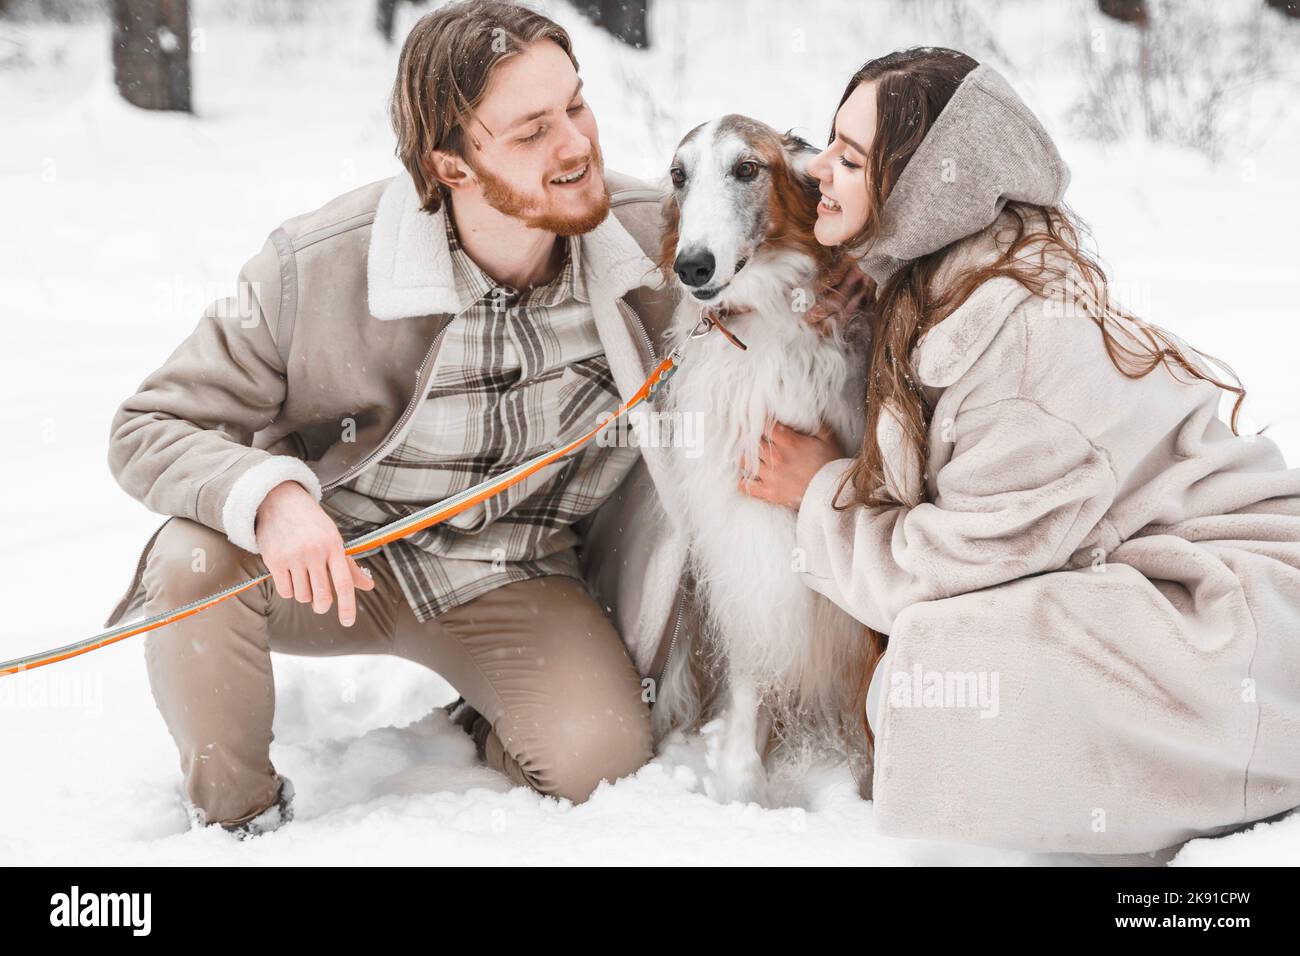 Amour romantique jeune couple fille, gars dans neige froid forêt d'hiver marchant avec animal, chien de chasse race russe borzoi. Sighthound, propriétaire de wolfdrier. H Banque D'Images